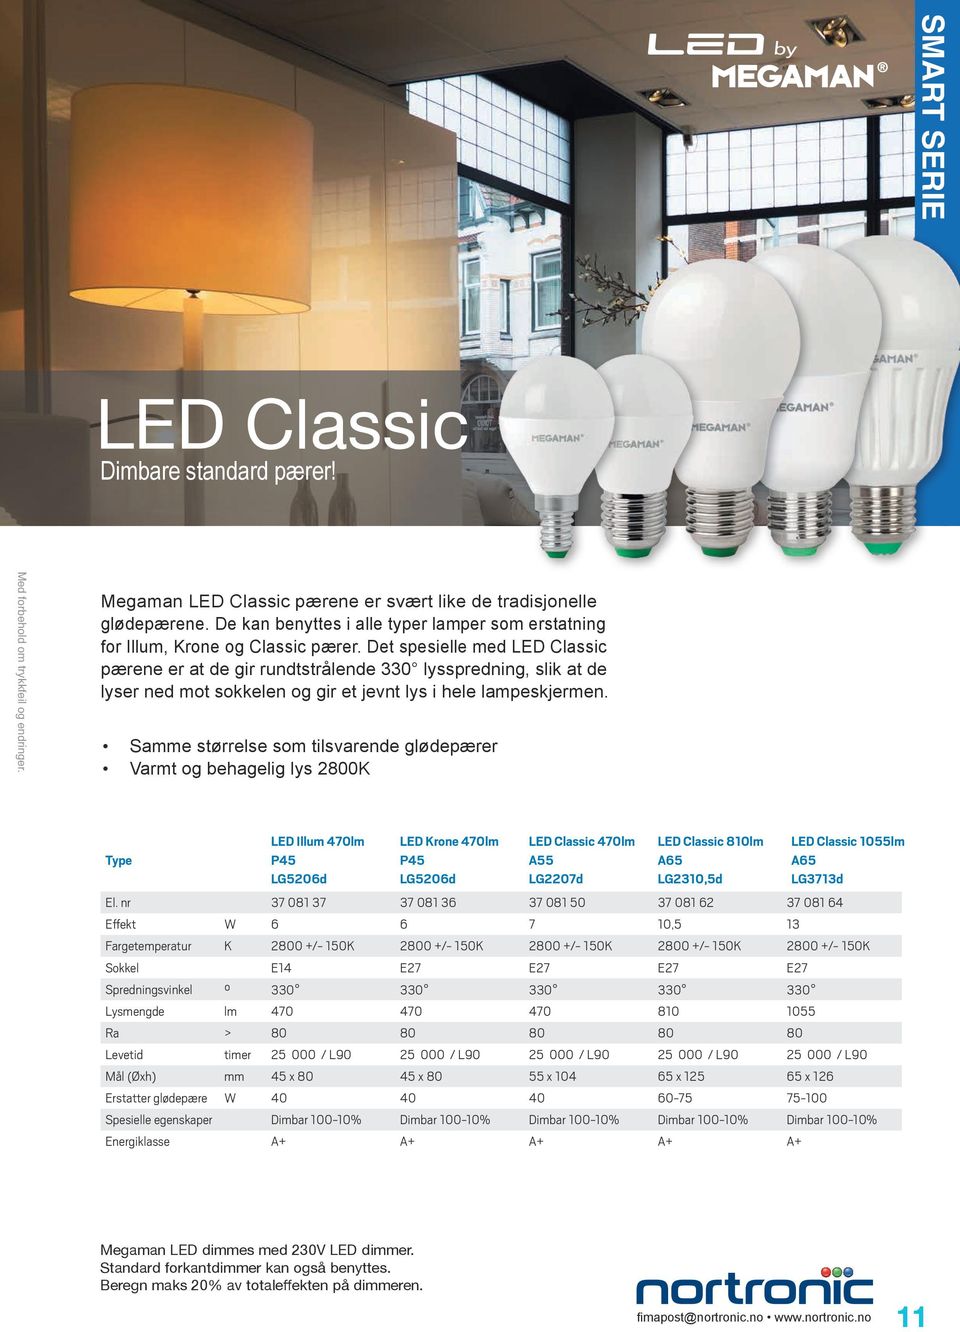 Det spesielle med LED Classic pærene er at de gir rundtstrålende 330 lysspredning, slik at de lyser ned mot sokkelen og gir et jevnt lys i hele lampeskjermen.